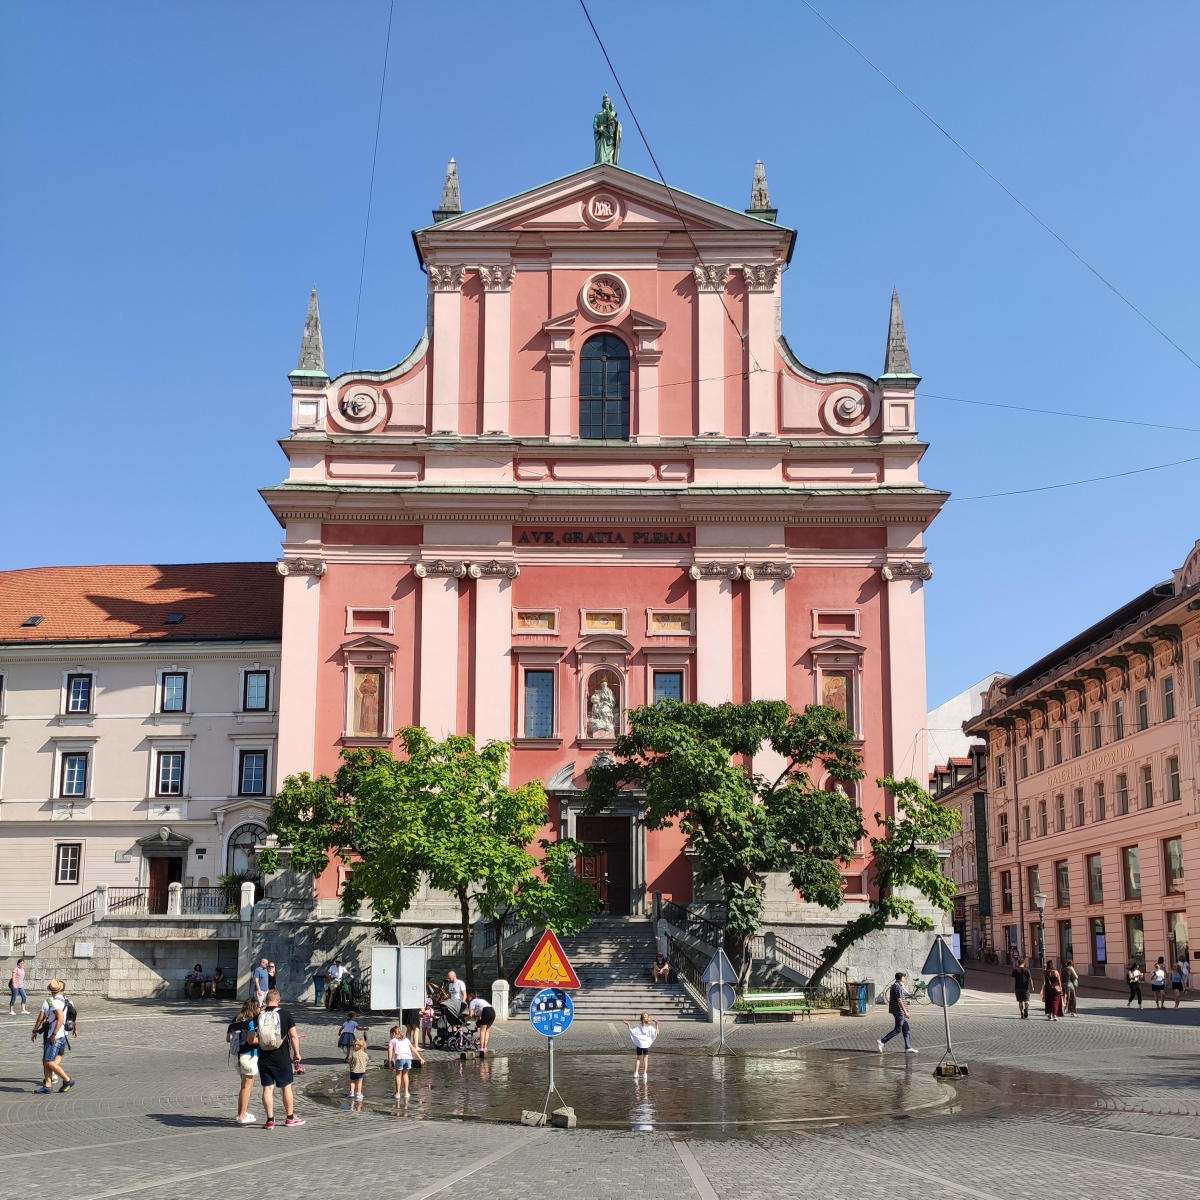 St. Marien und Prešerenplatz